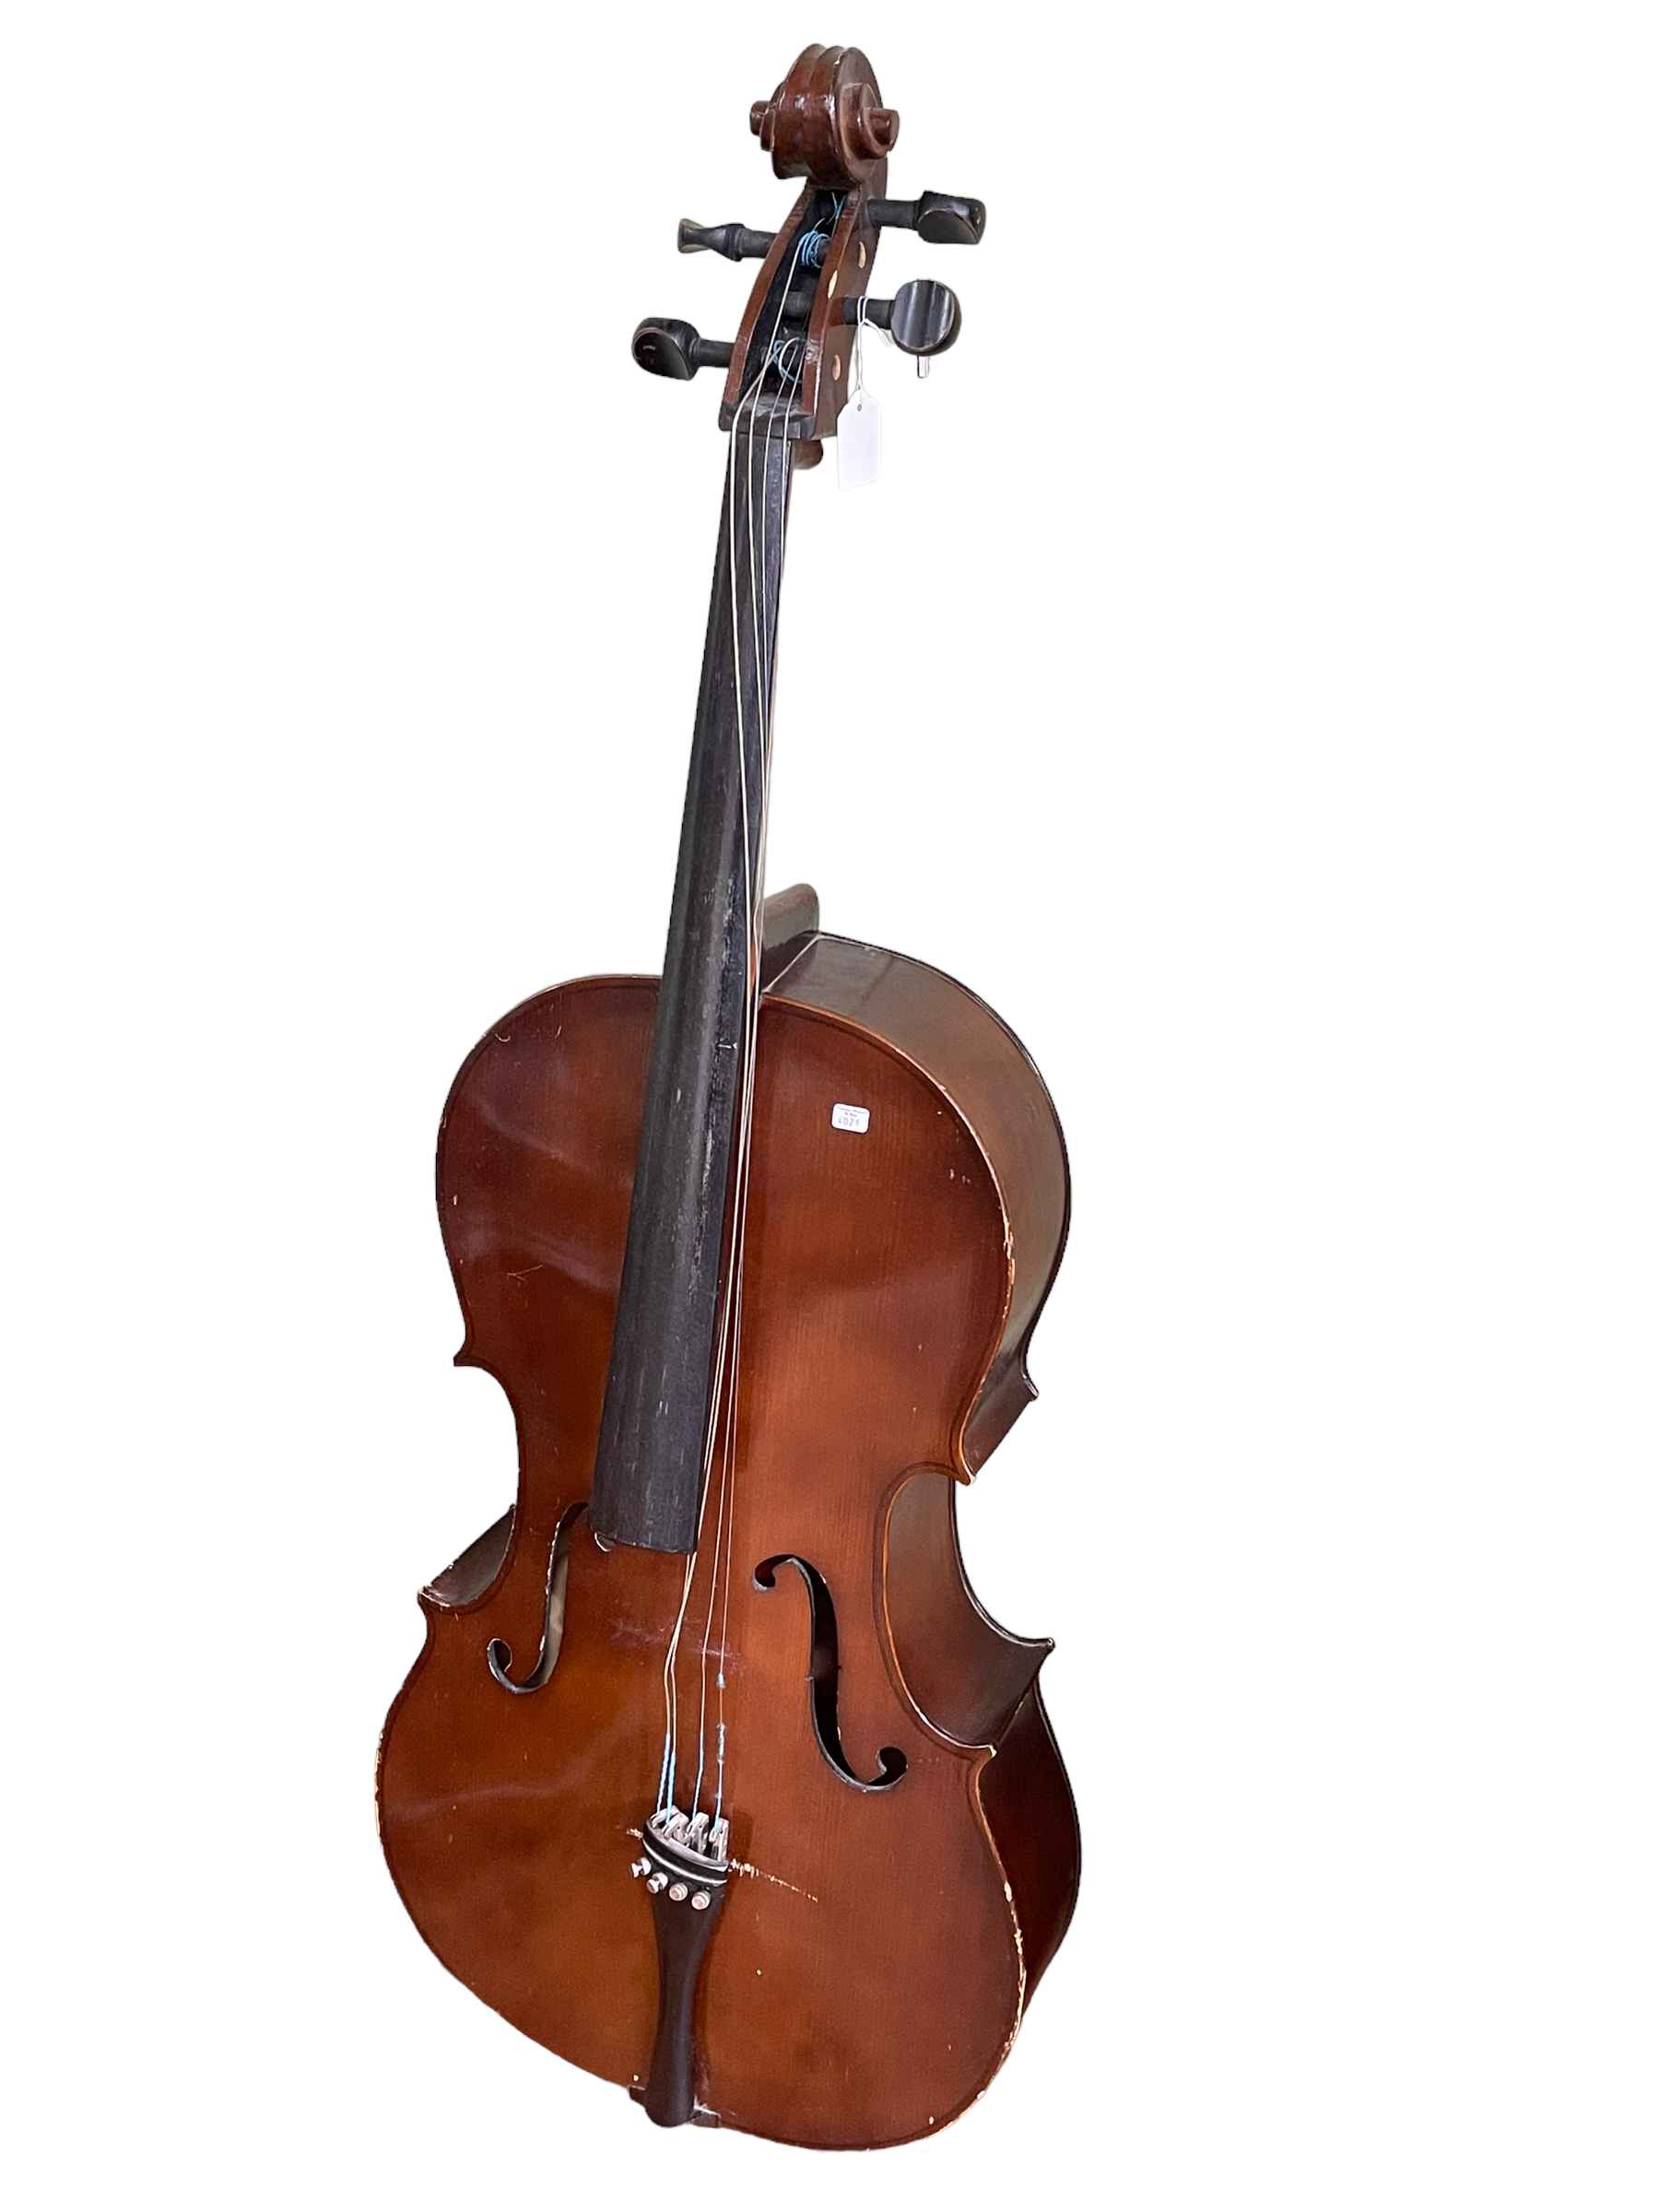 Cello, 131cm high.